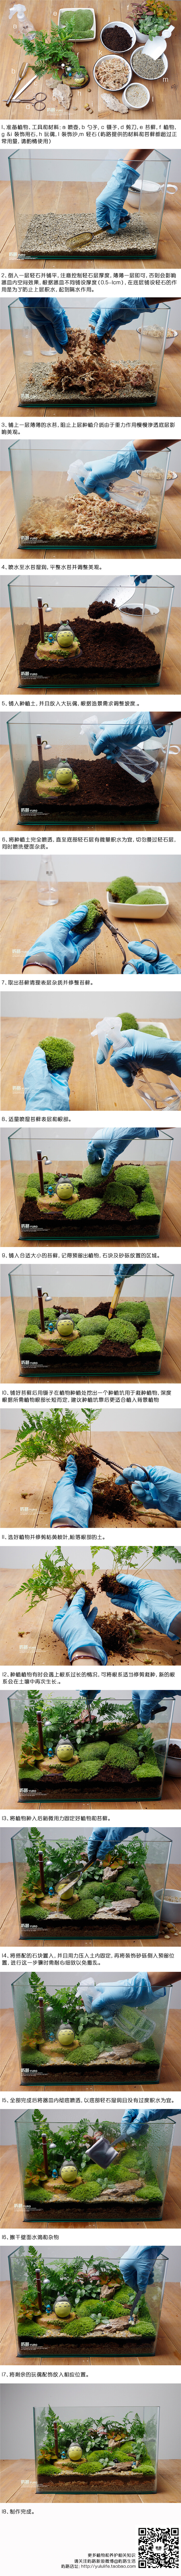 屿路生活 原创大型苔藓景观制作教程 生态瓶制作教程 原创桌面绿植 宫崎骏龙猫系列 手工创意